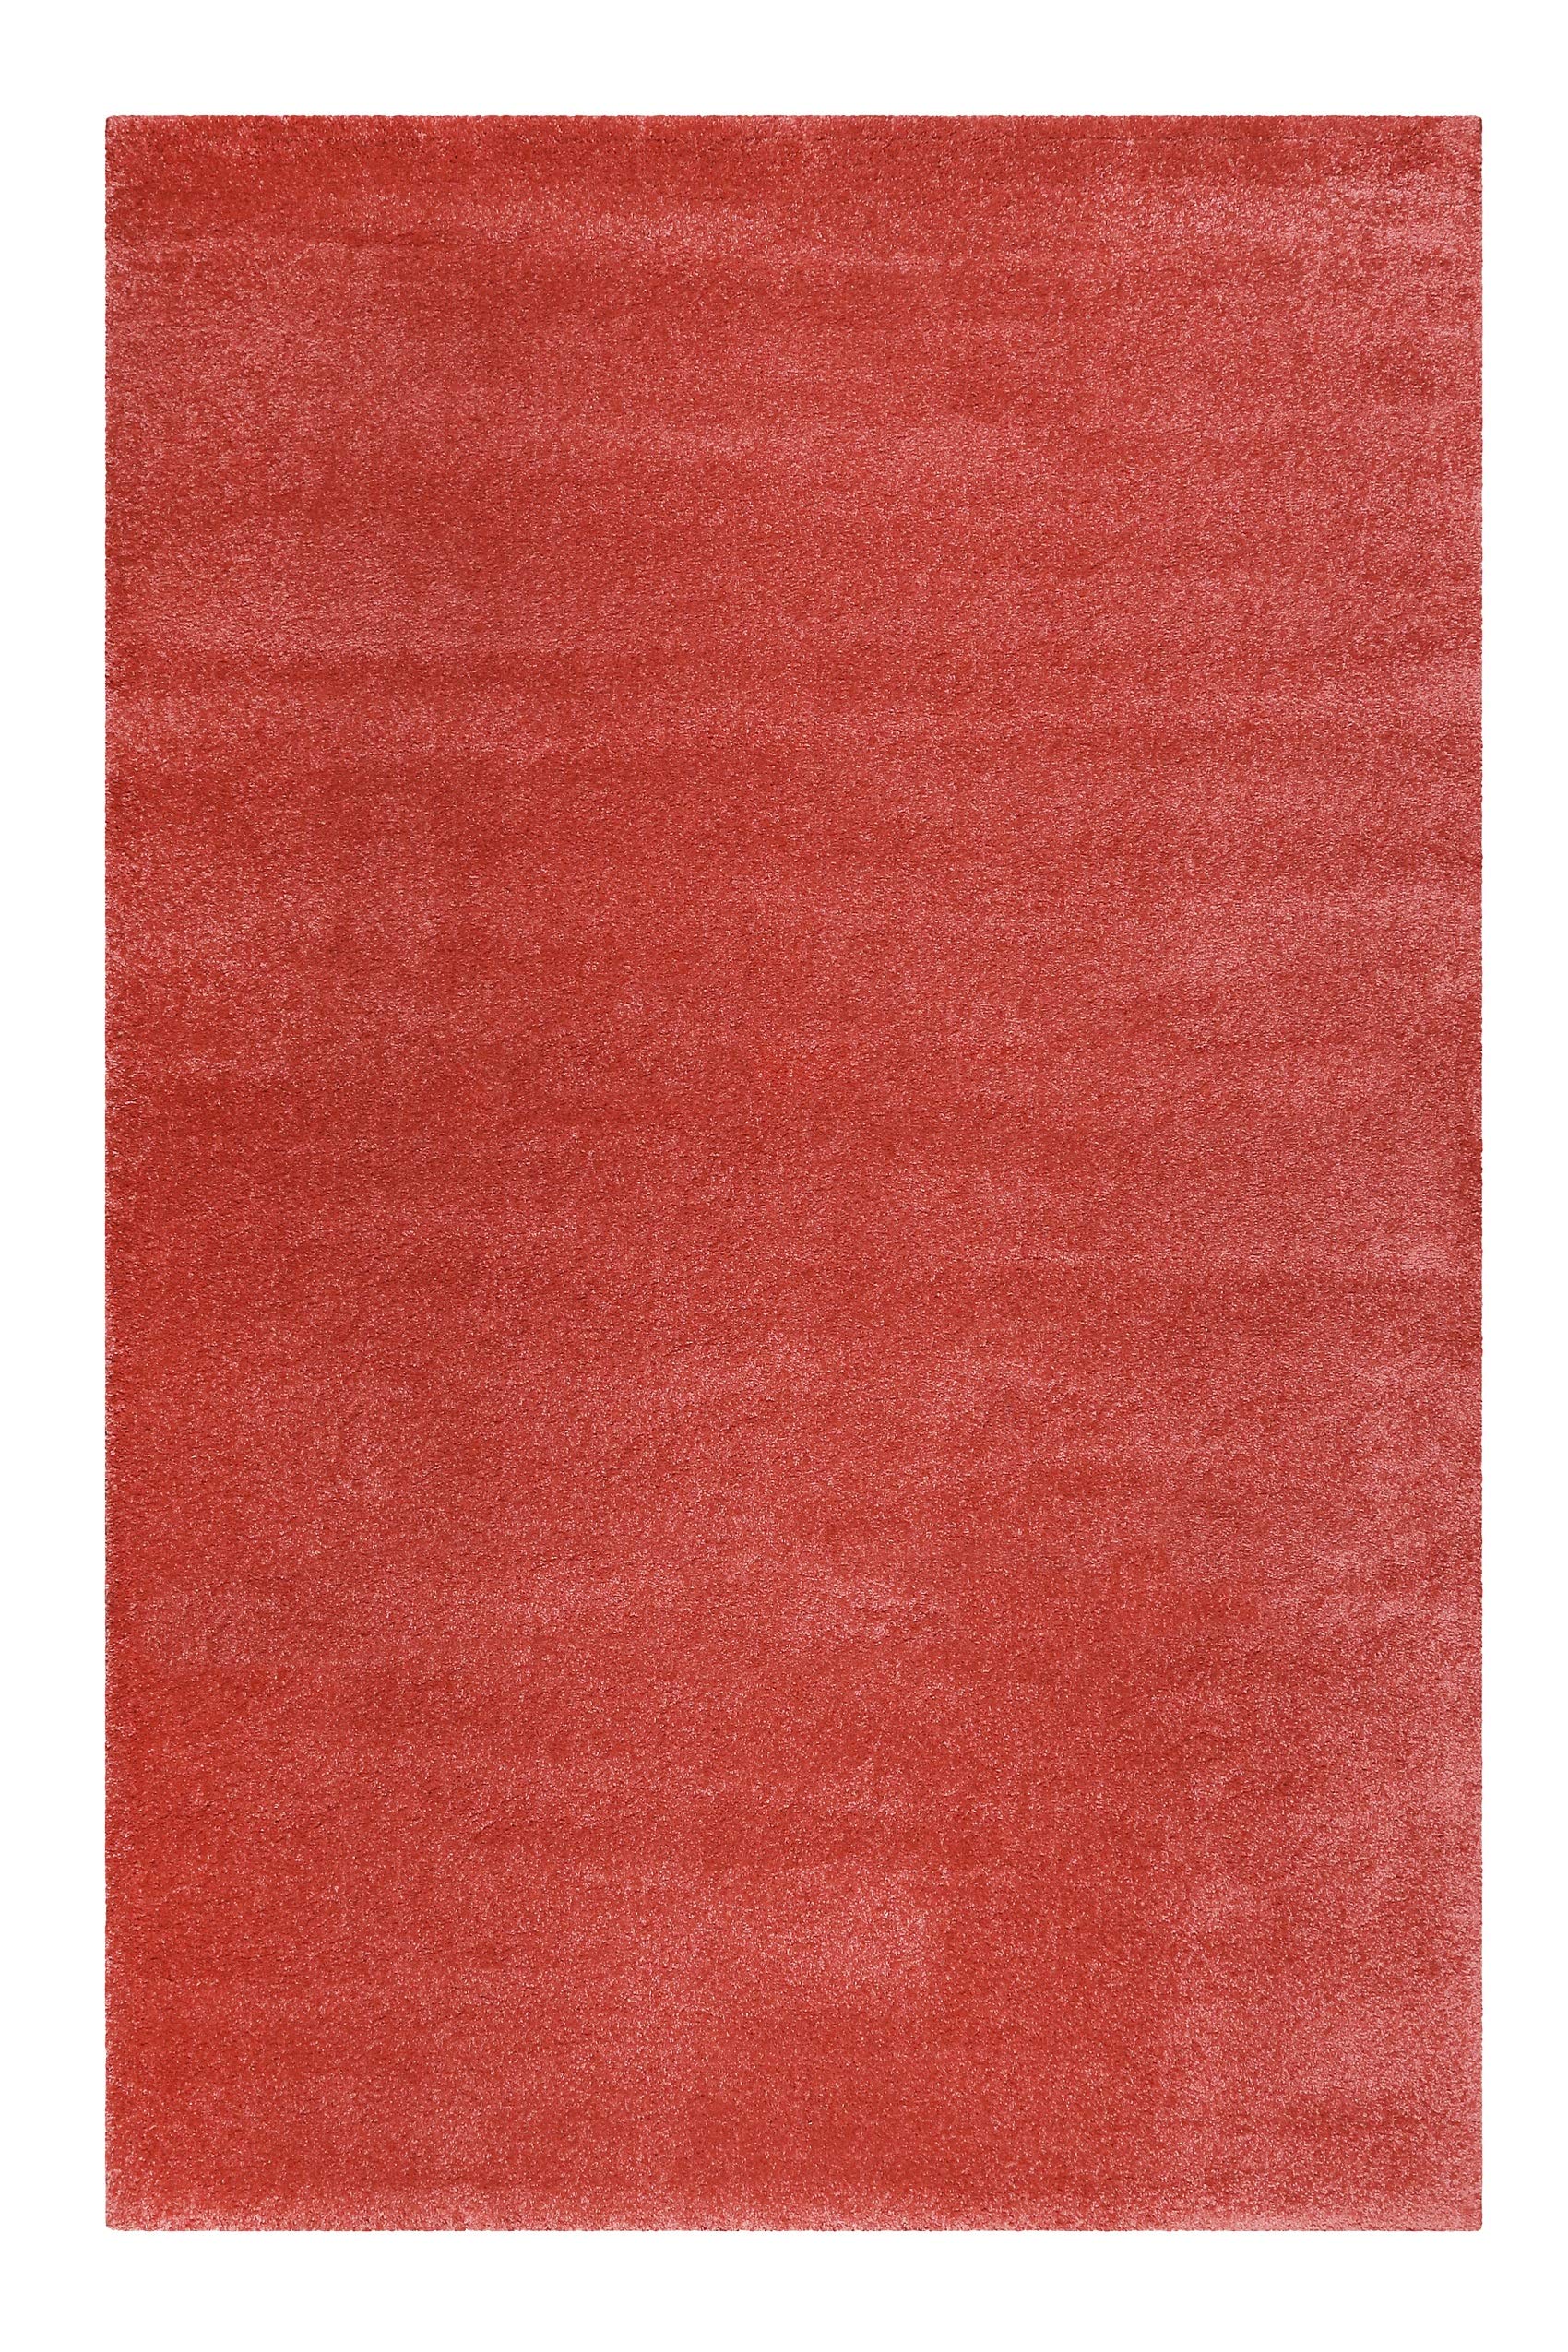 Esprit Home, Moderner Kurzflor Teppich - Läufer für Wohnzimmer, Flur, Schlafzimmer, California (80 x 150 cm, Hibiskus rot)